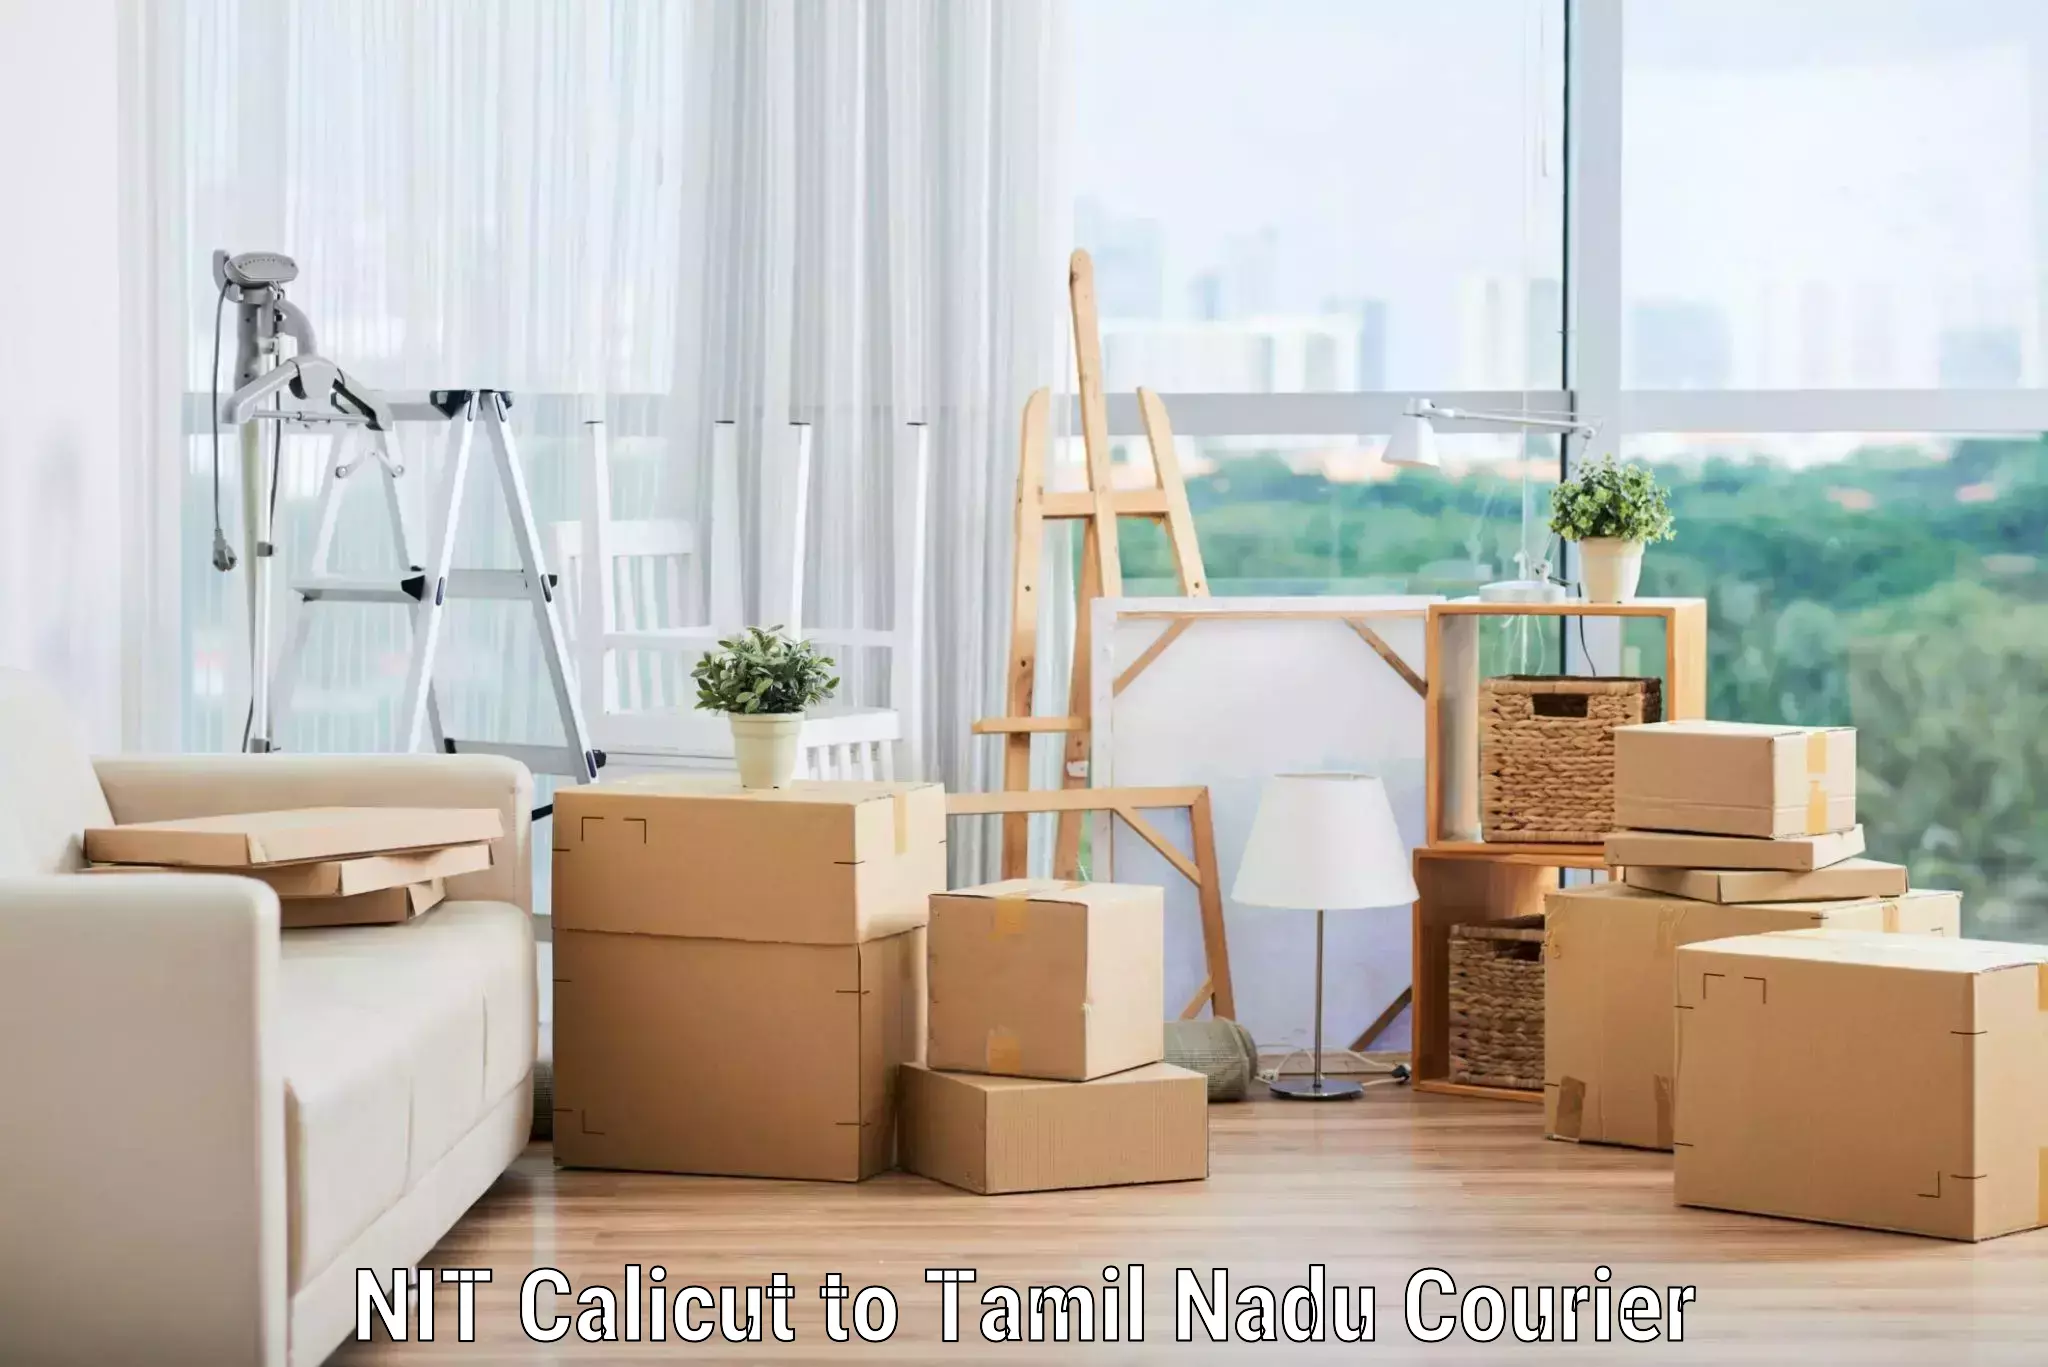 Furniture transport service NIT Calicut to Tamil Nadu